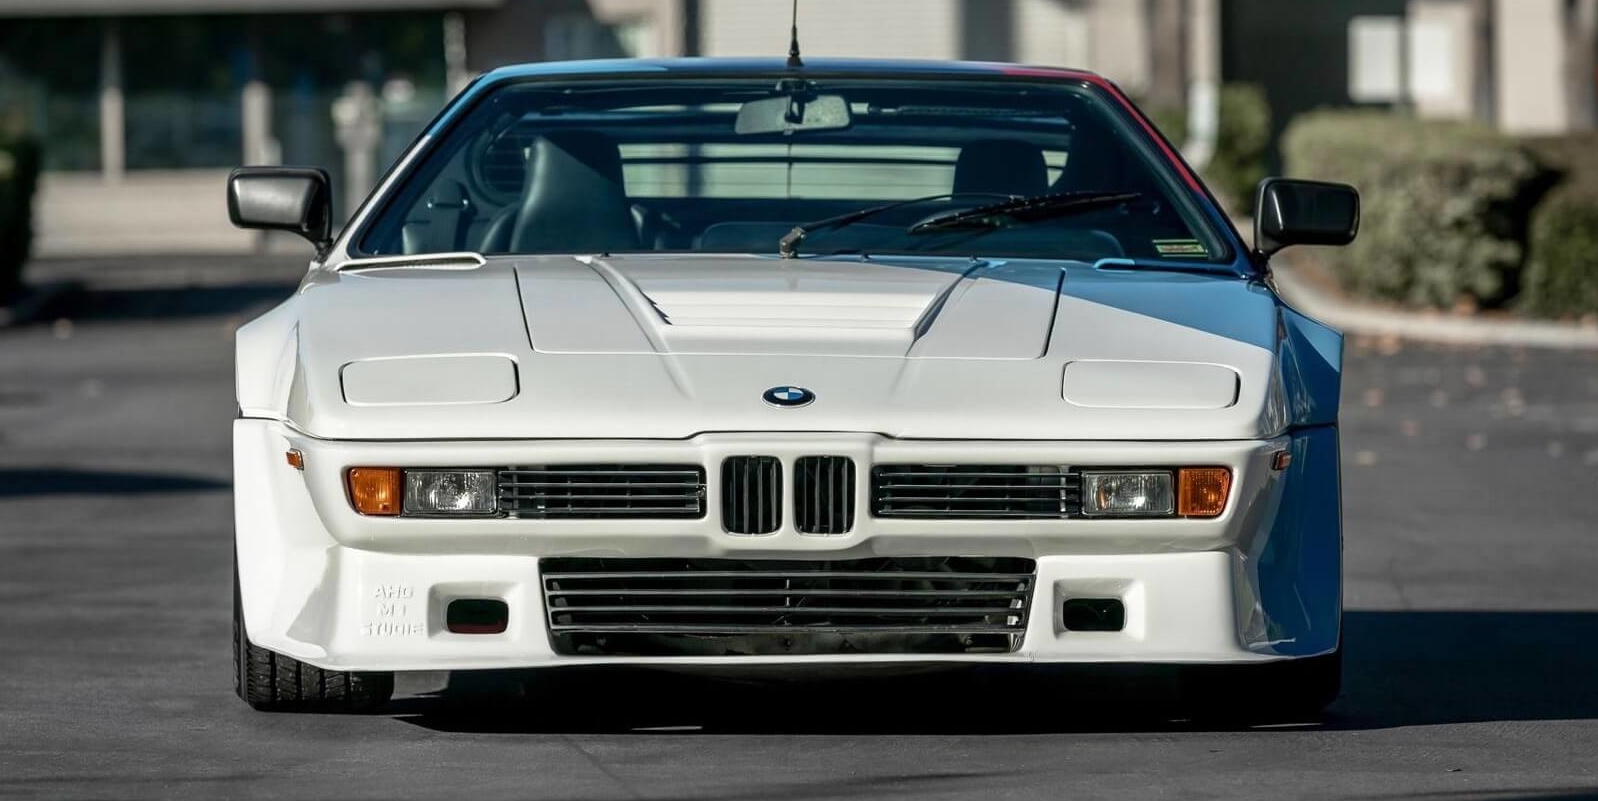 Kateri je najhitrejši BMW vseh časov?